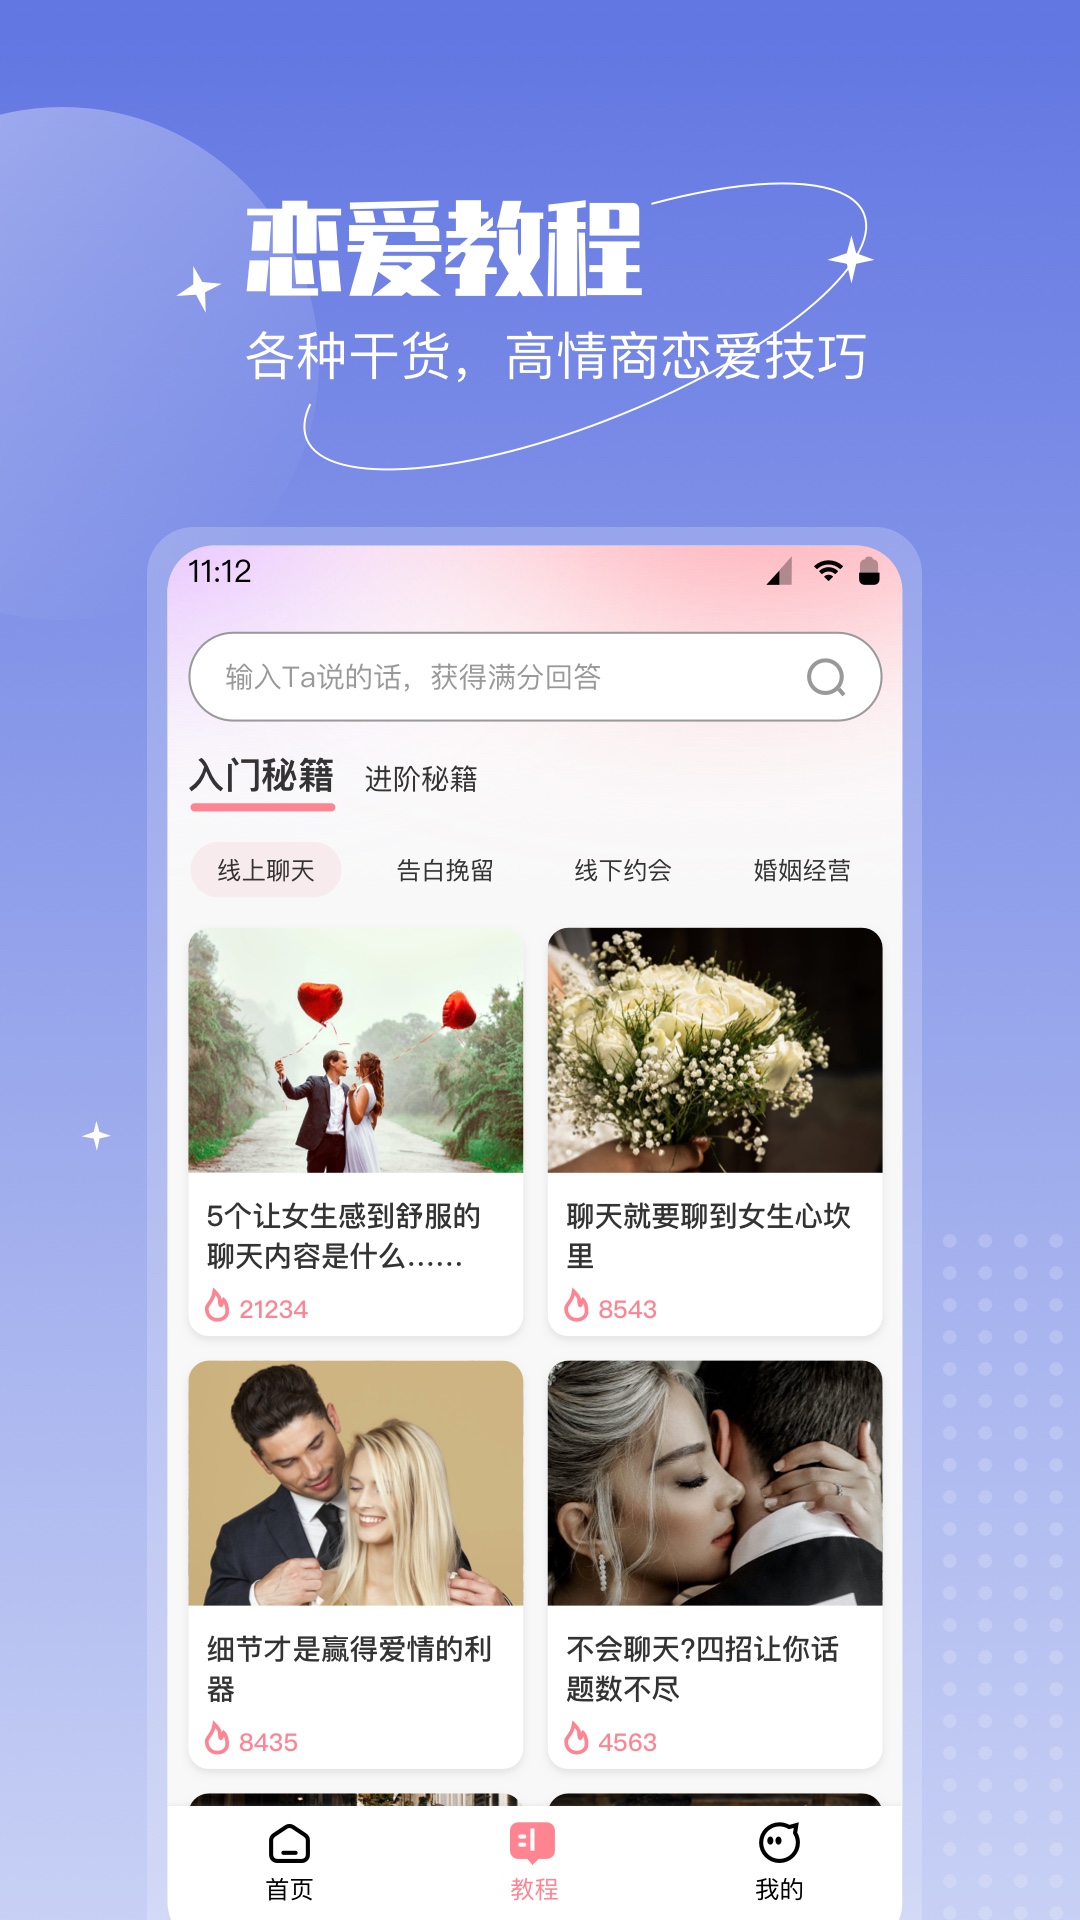 恋语助手app下载,恋语助手app官方版 v1.6.0